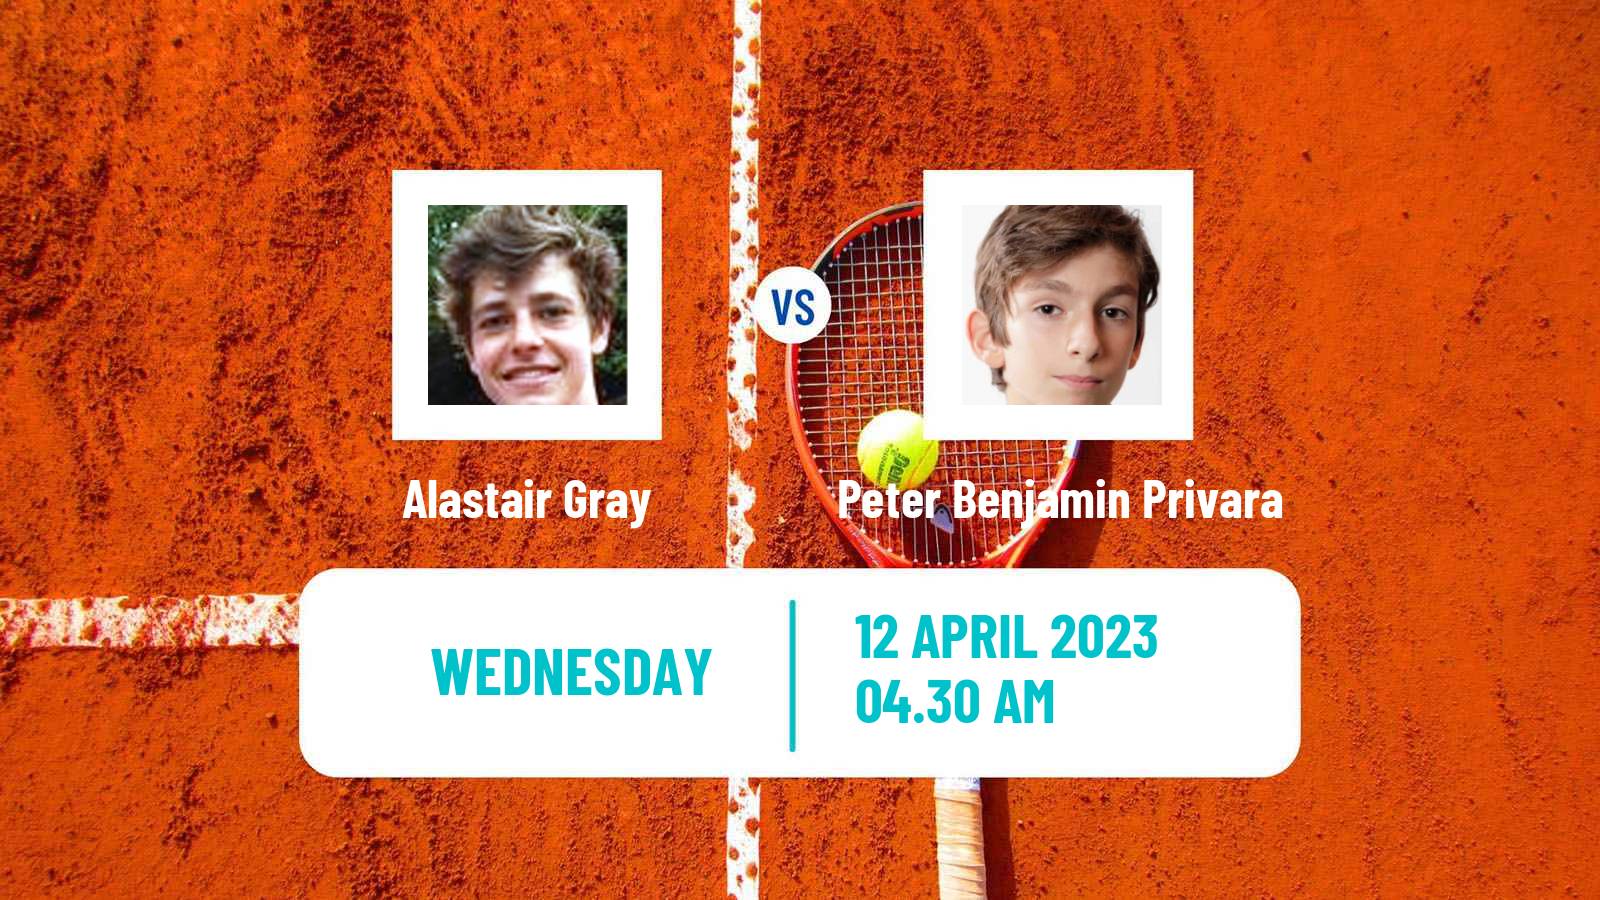 Tennis ITF Tournaments Alastair Gray - Peter Benjamin Privara